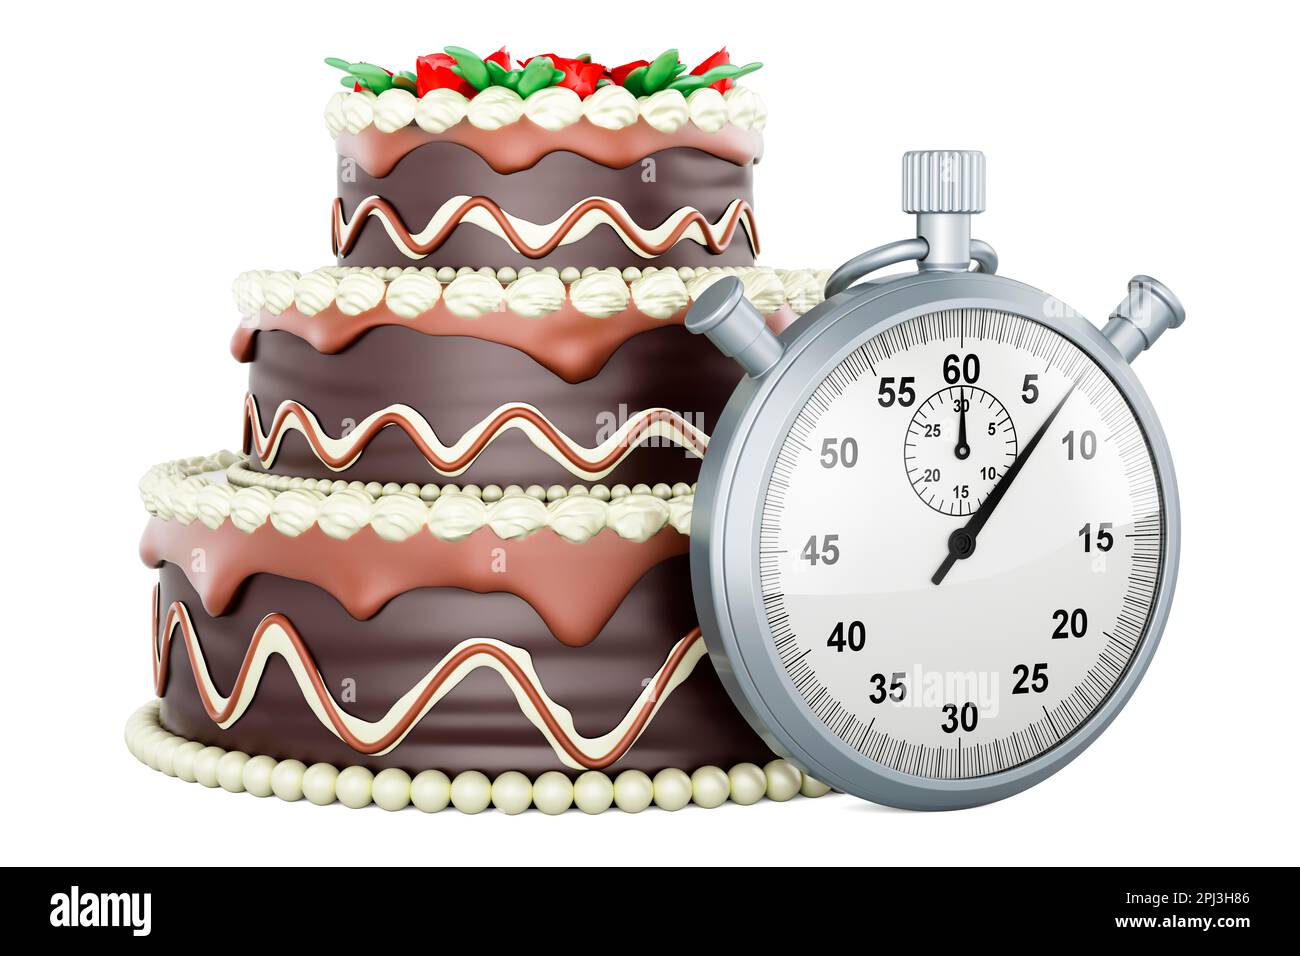 Gâteau d'anniversaire au chocolat avec chronomètre, 3D rendu isolé sur fond  blanc Photo Stock - Alamy